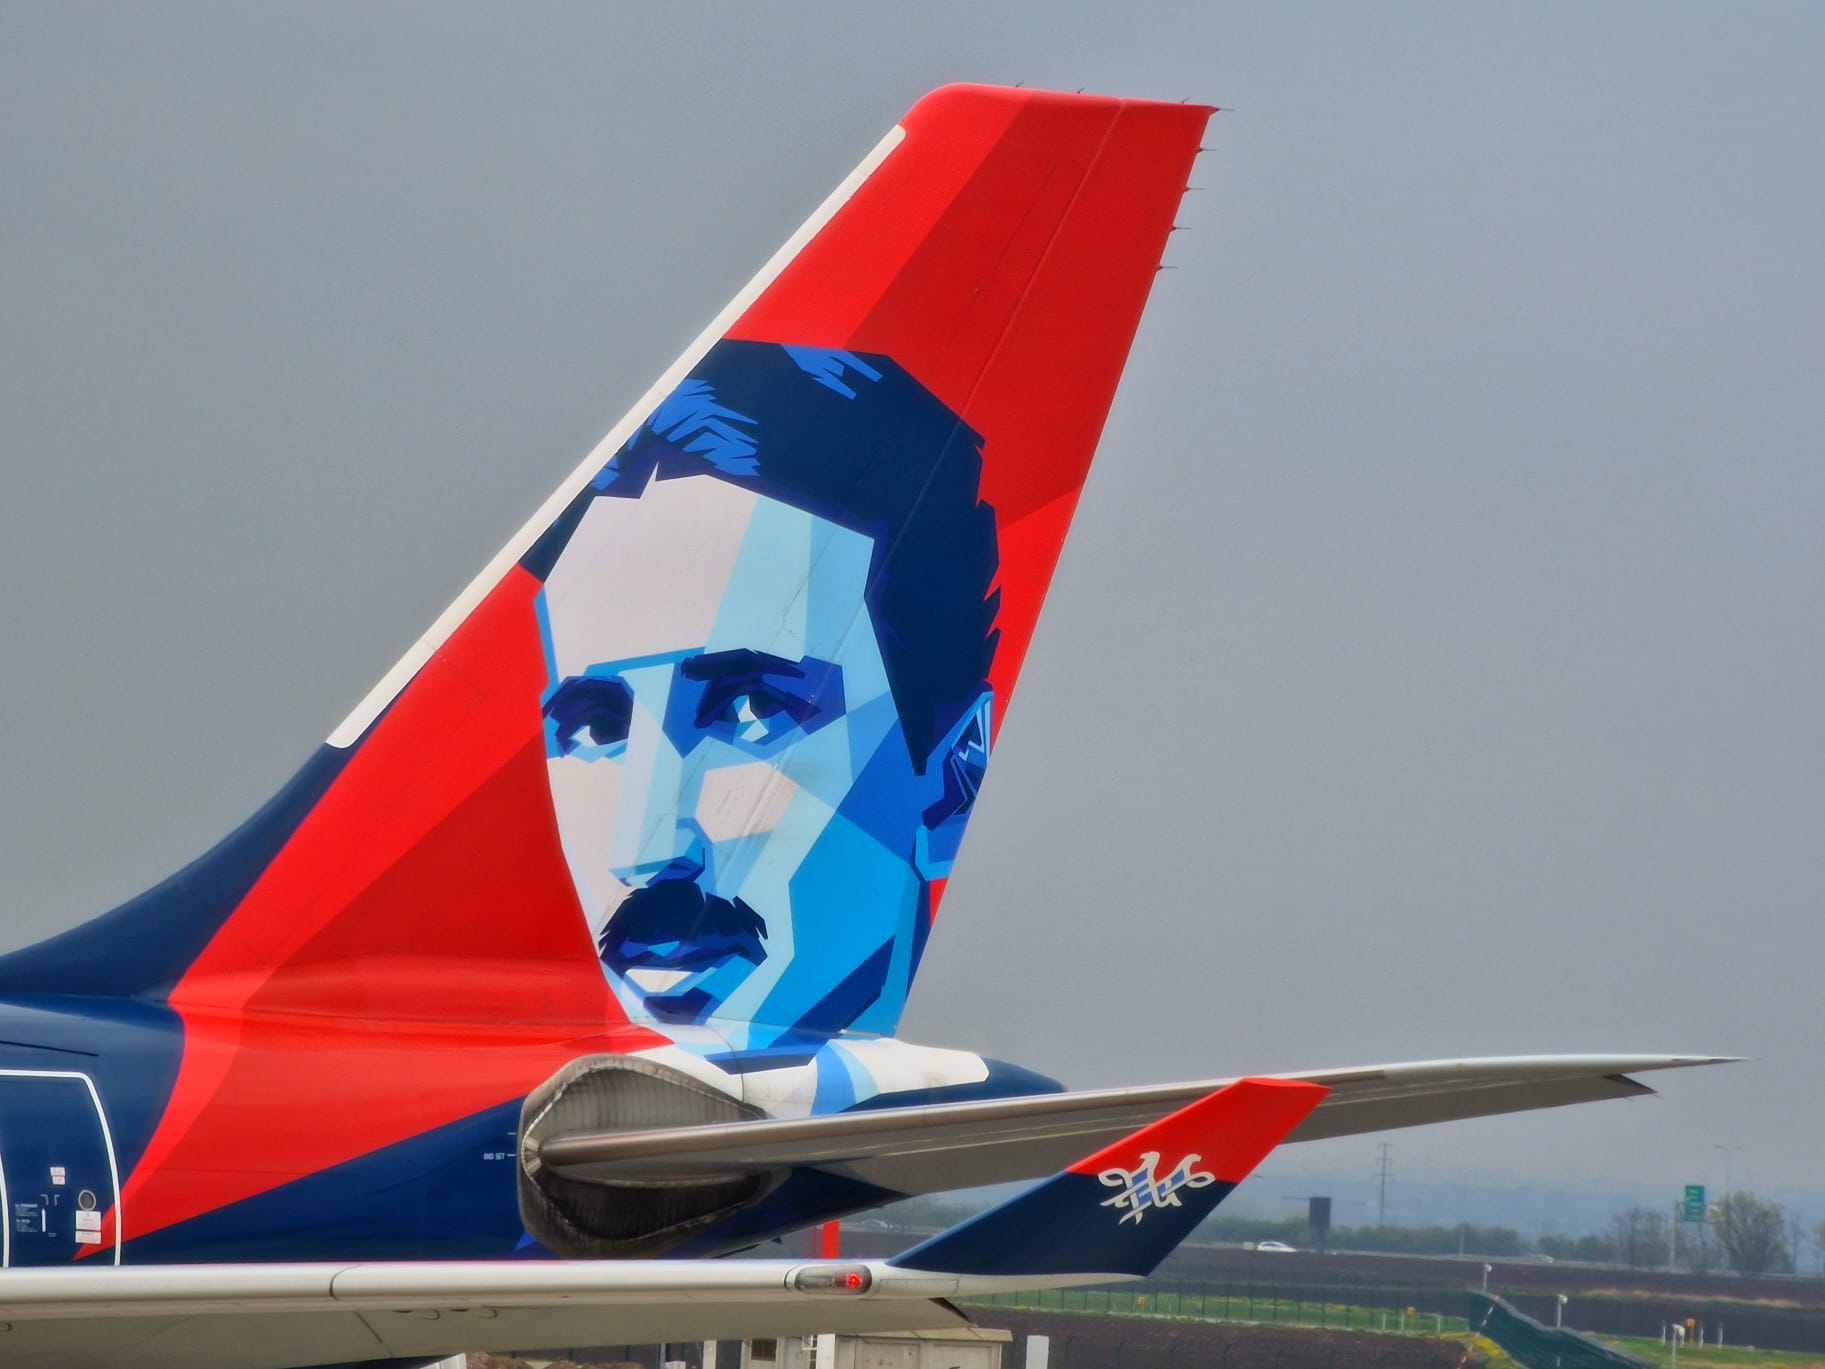 Le visage de Nikola Tesla, peint sur la queue d’un avion de la compagnie Air Serbia.